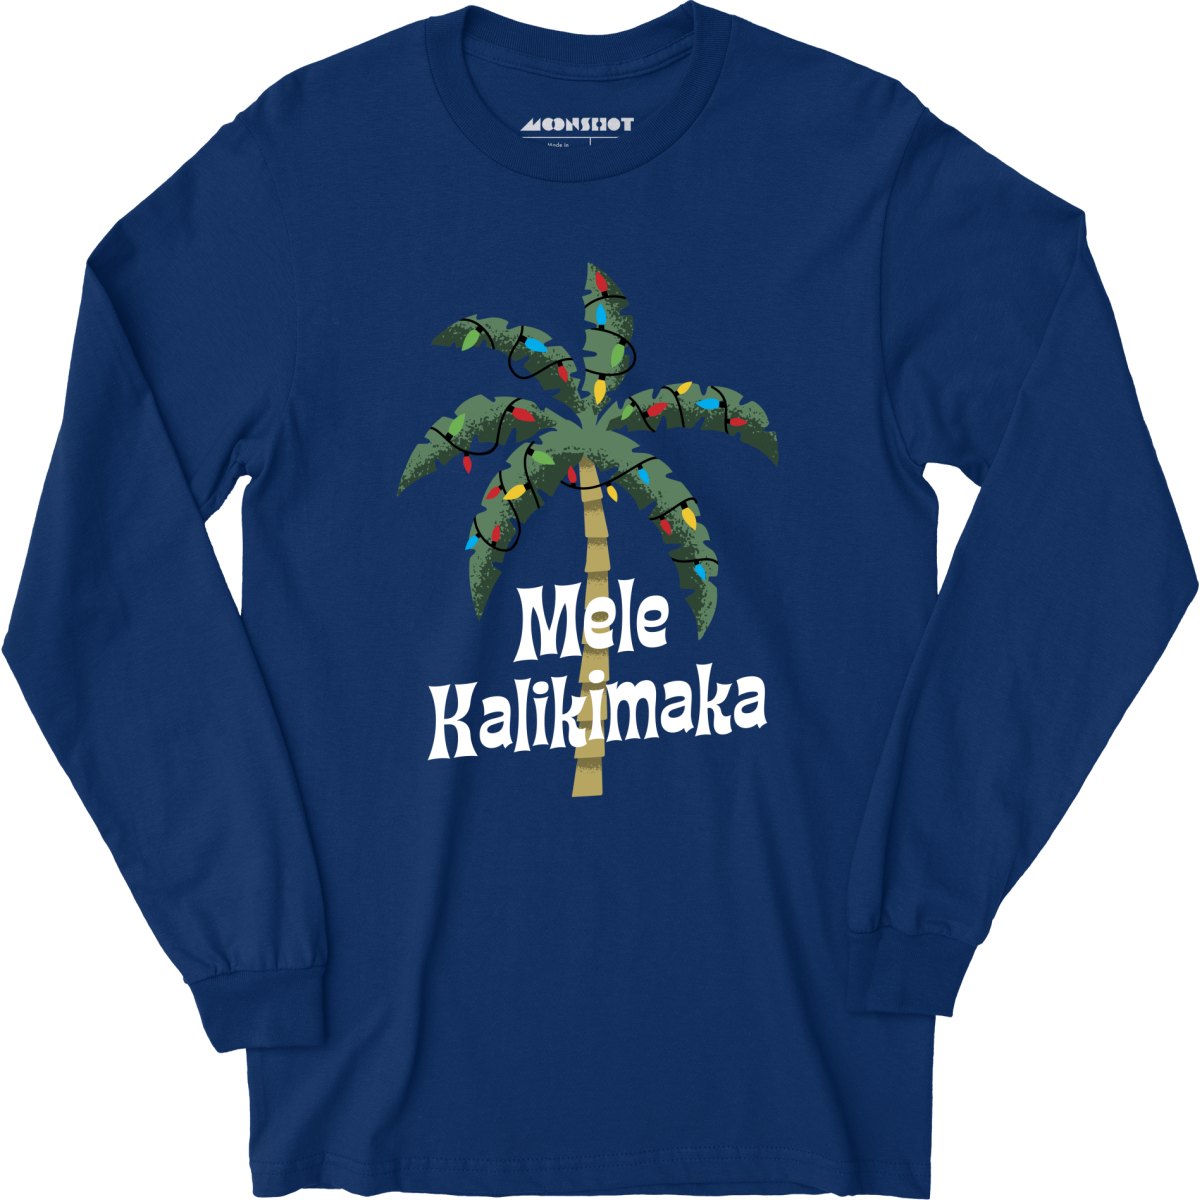 Mele Kalikimaka - Long Sleeve T-Shirt